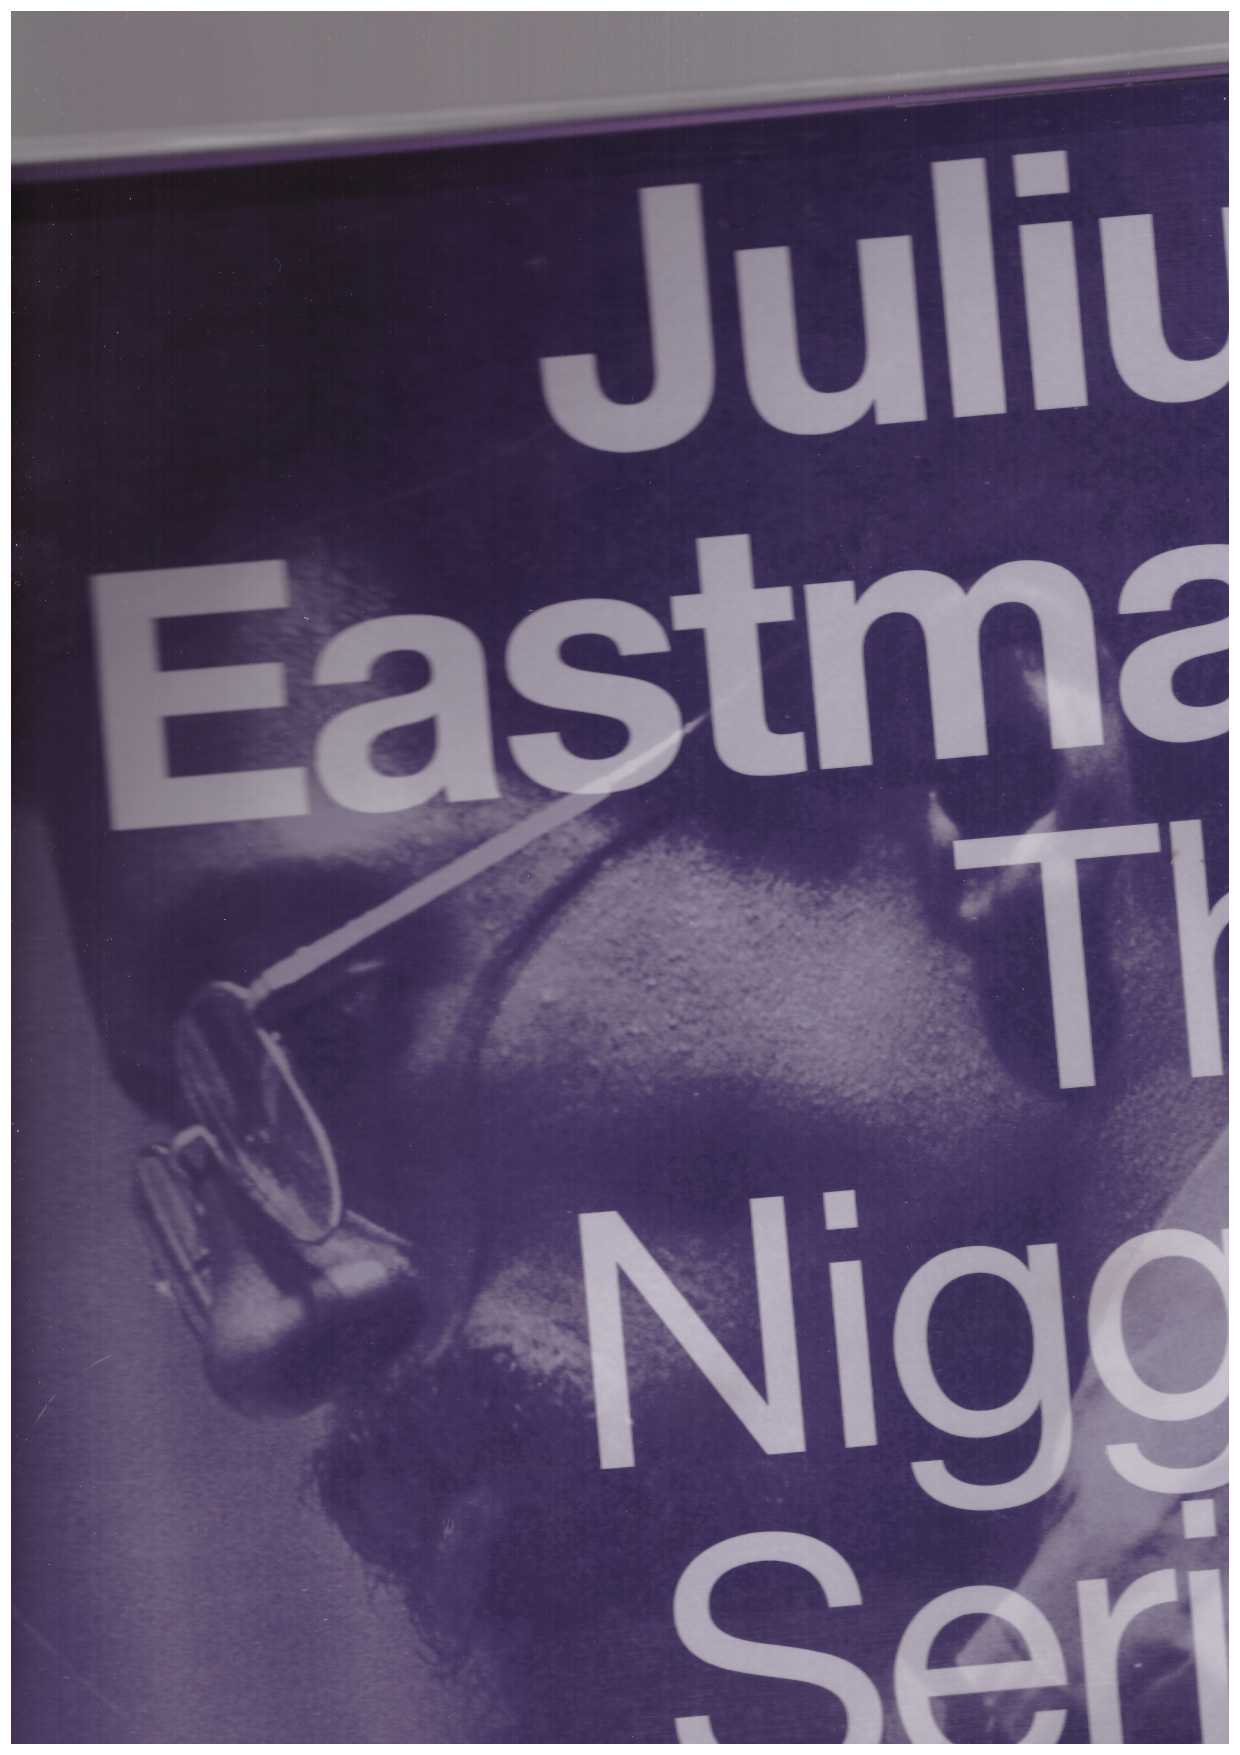 EASTMAN, Julius - The nigger series